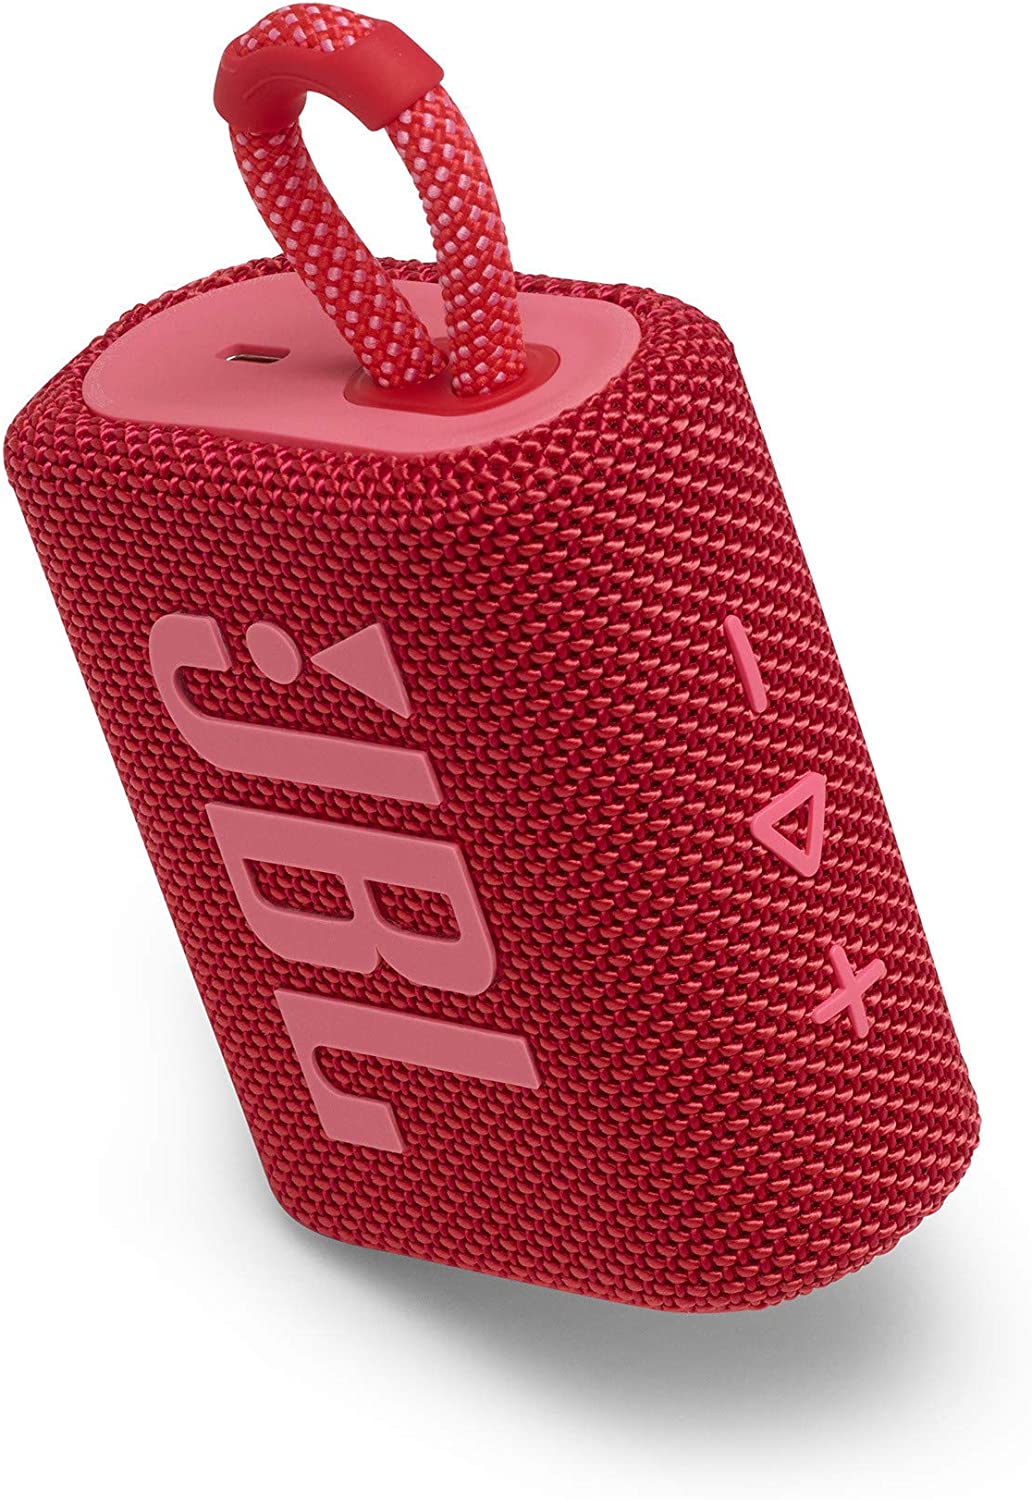 JBL Go 3 Portable Waterproof Speaker, Red Bluetooth